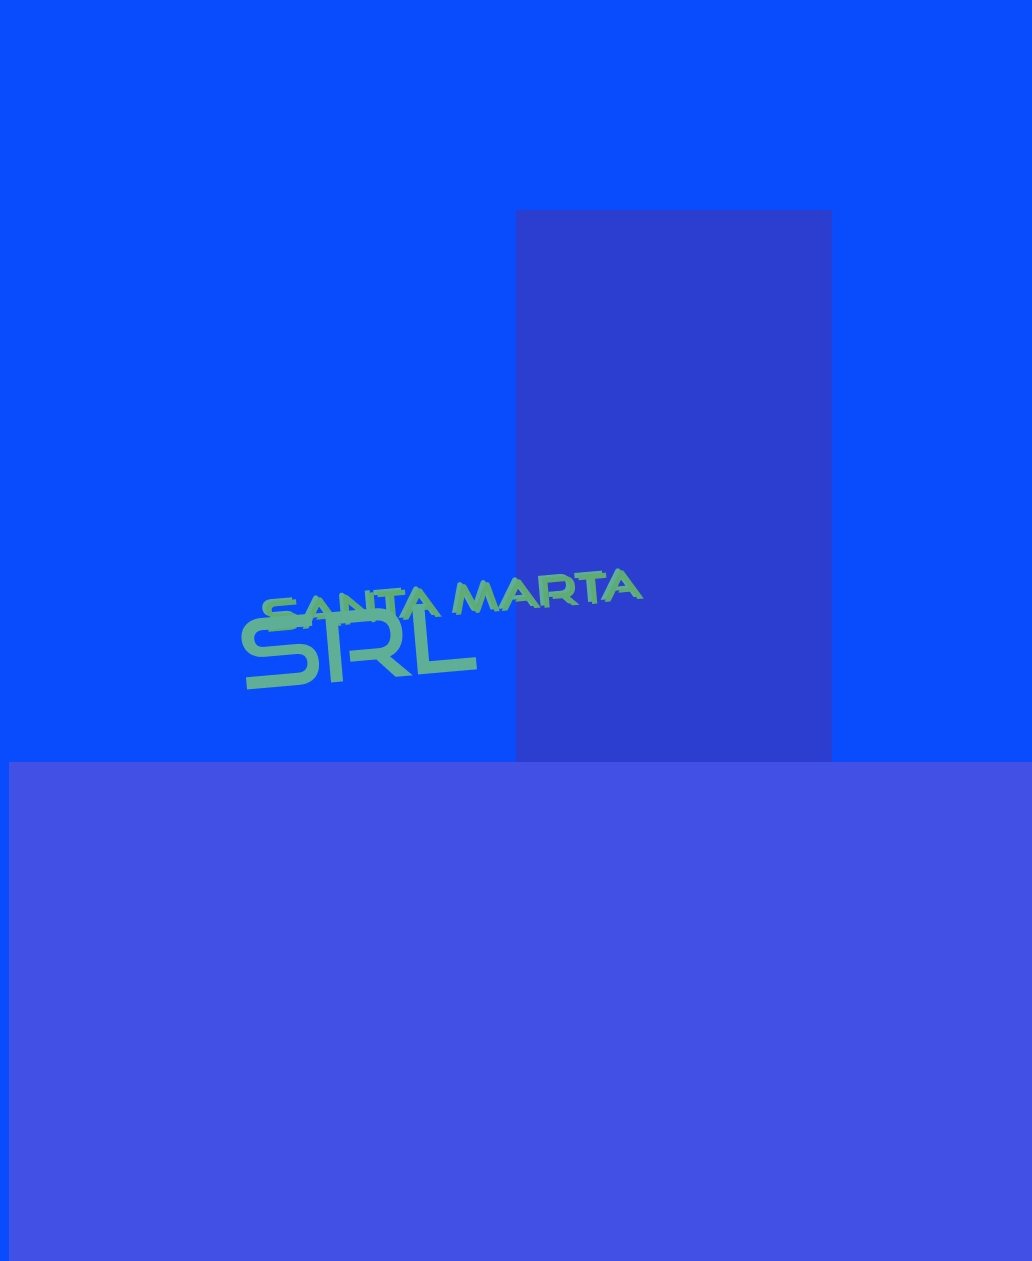 logo Santa Marta Srl